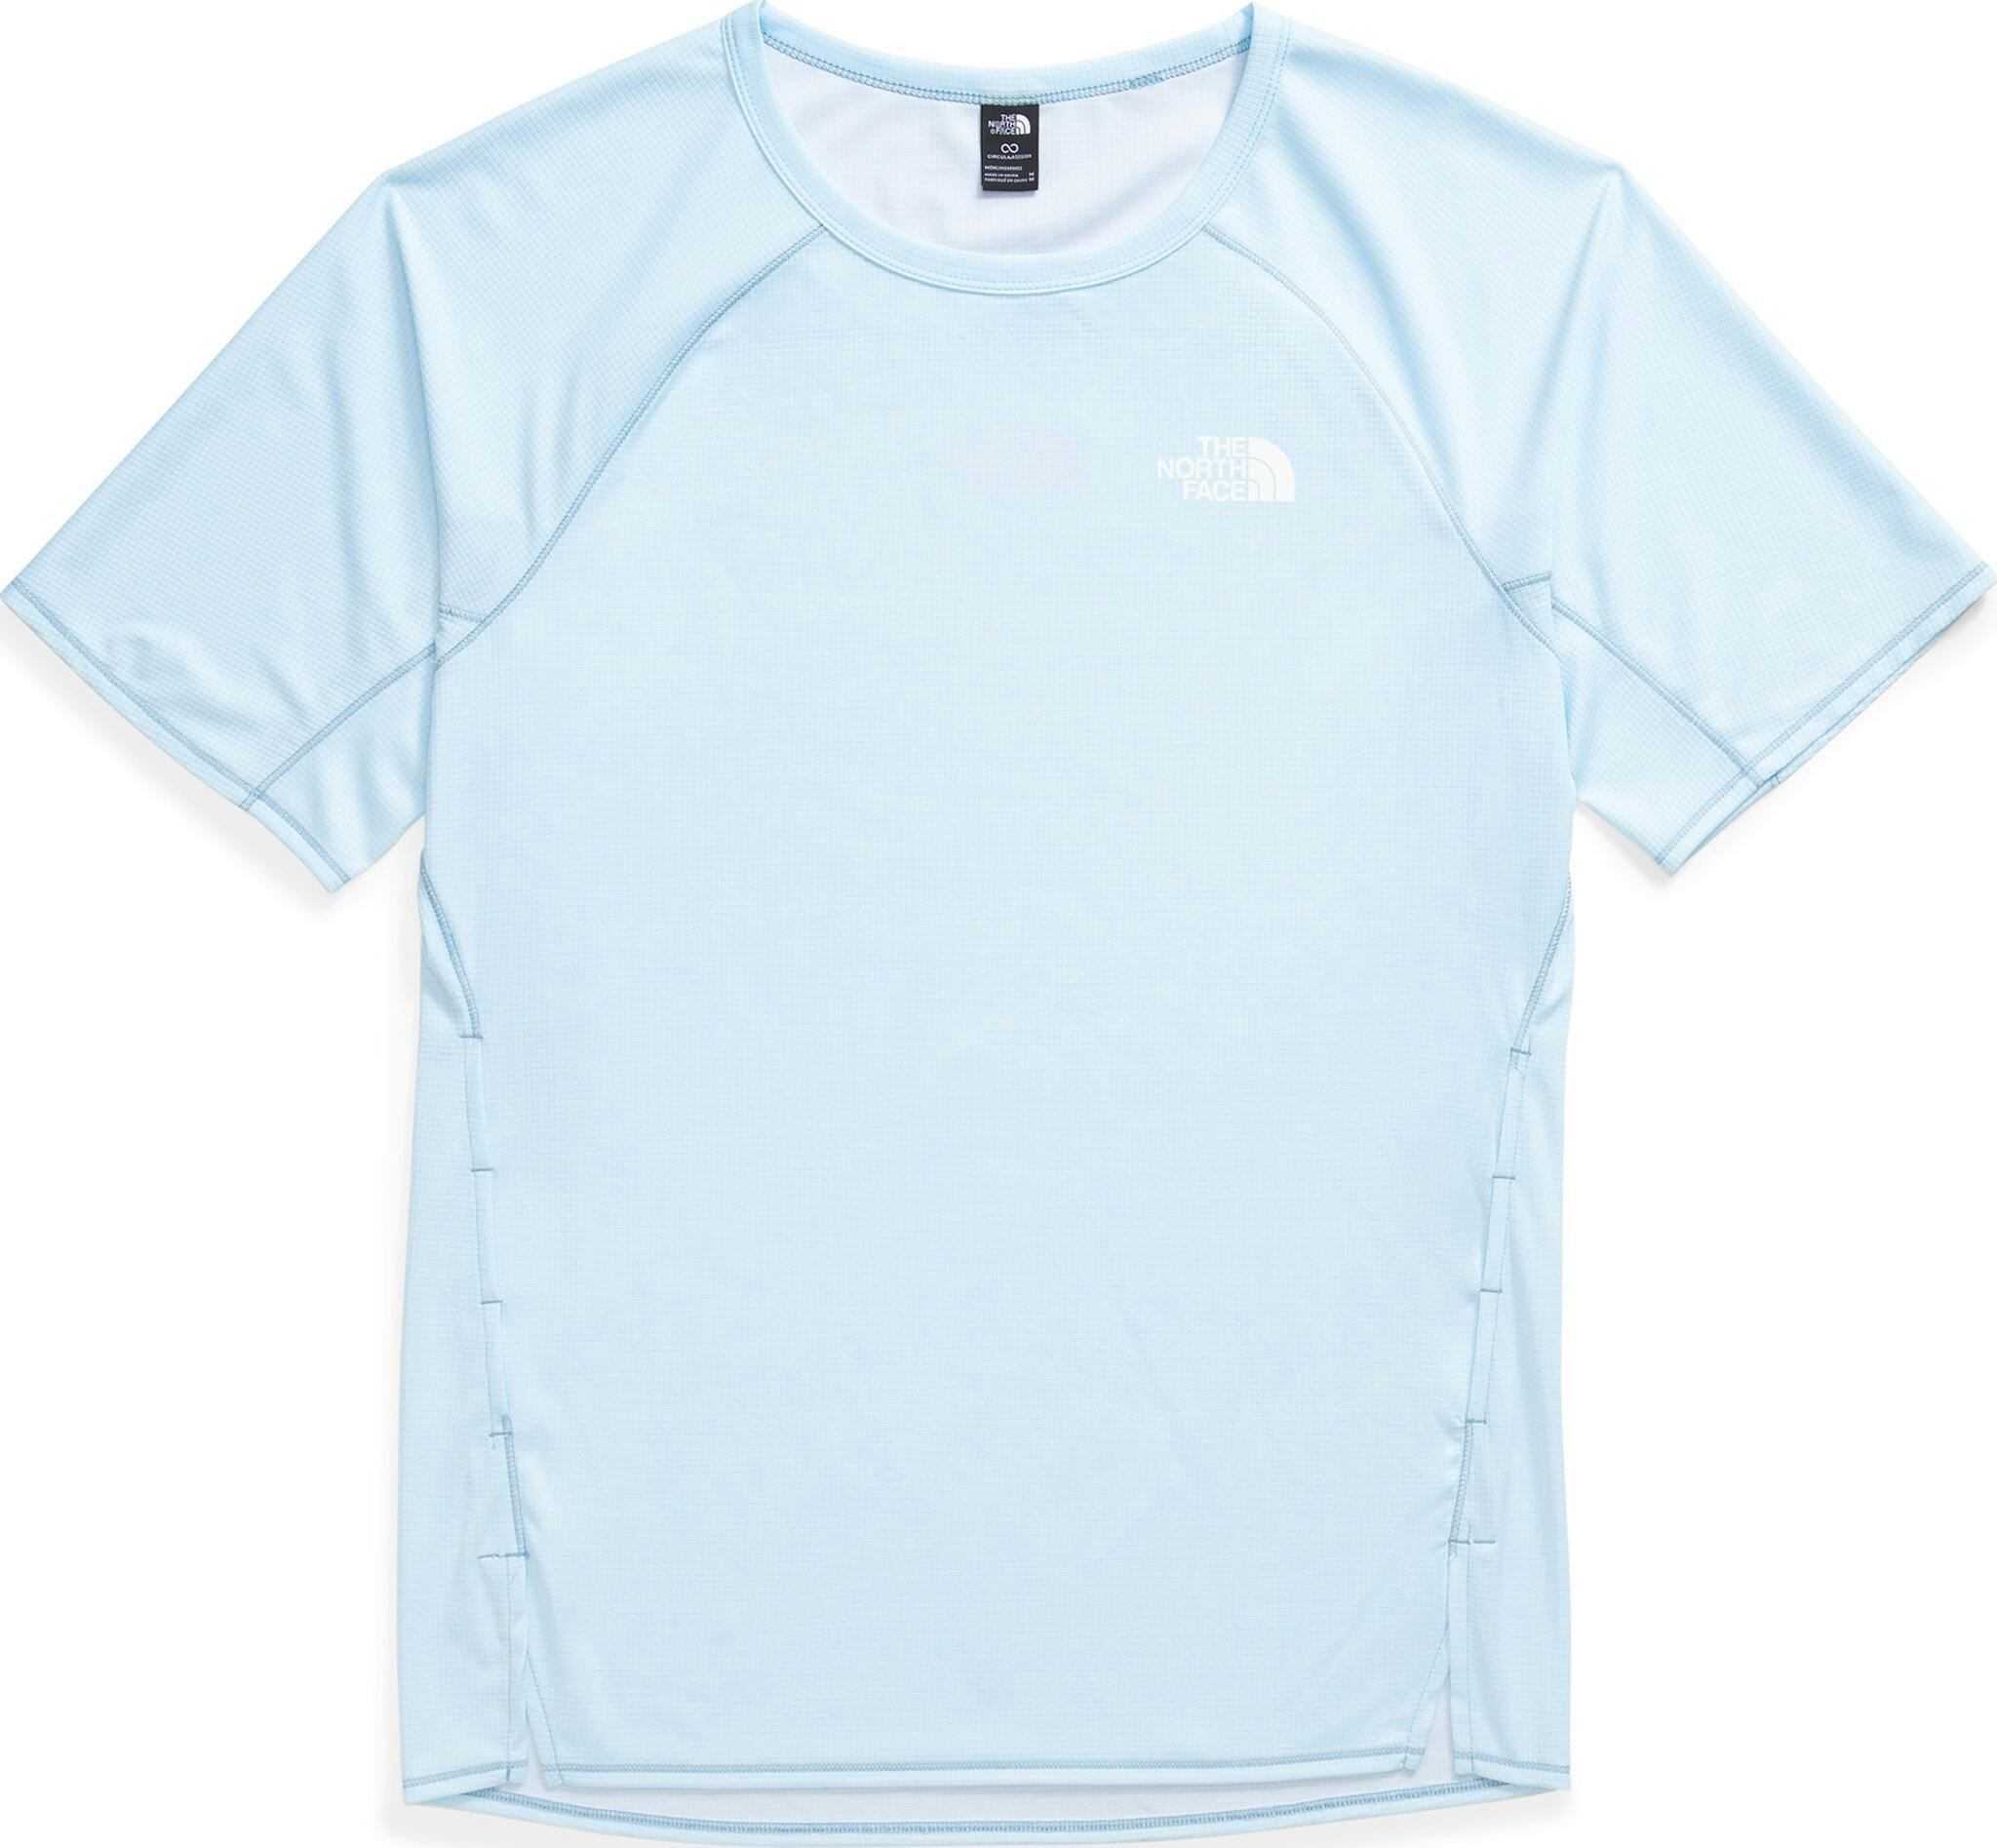 Product image for Summer Light UPF Short-Sleeve T-Shirt - Men’s